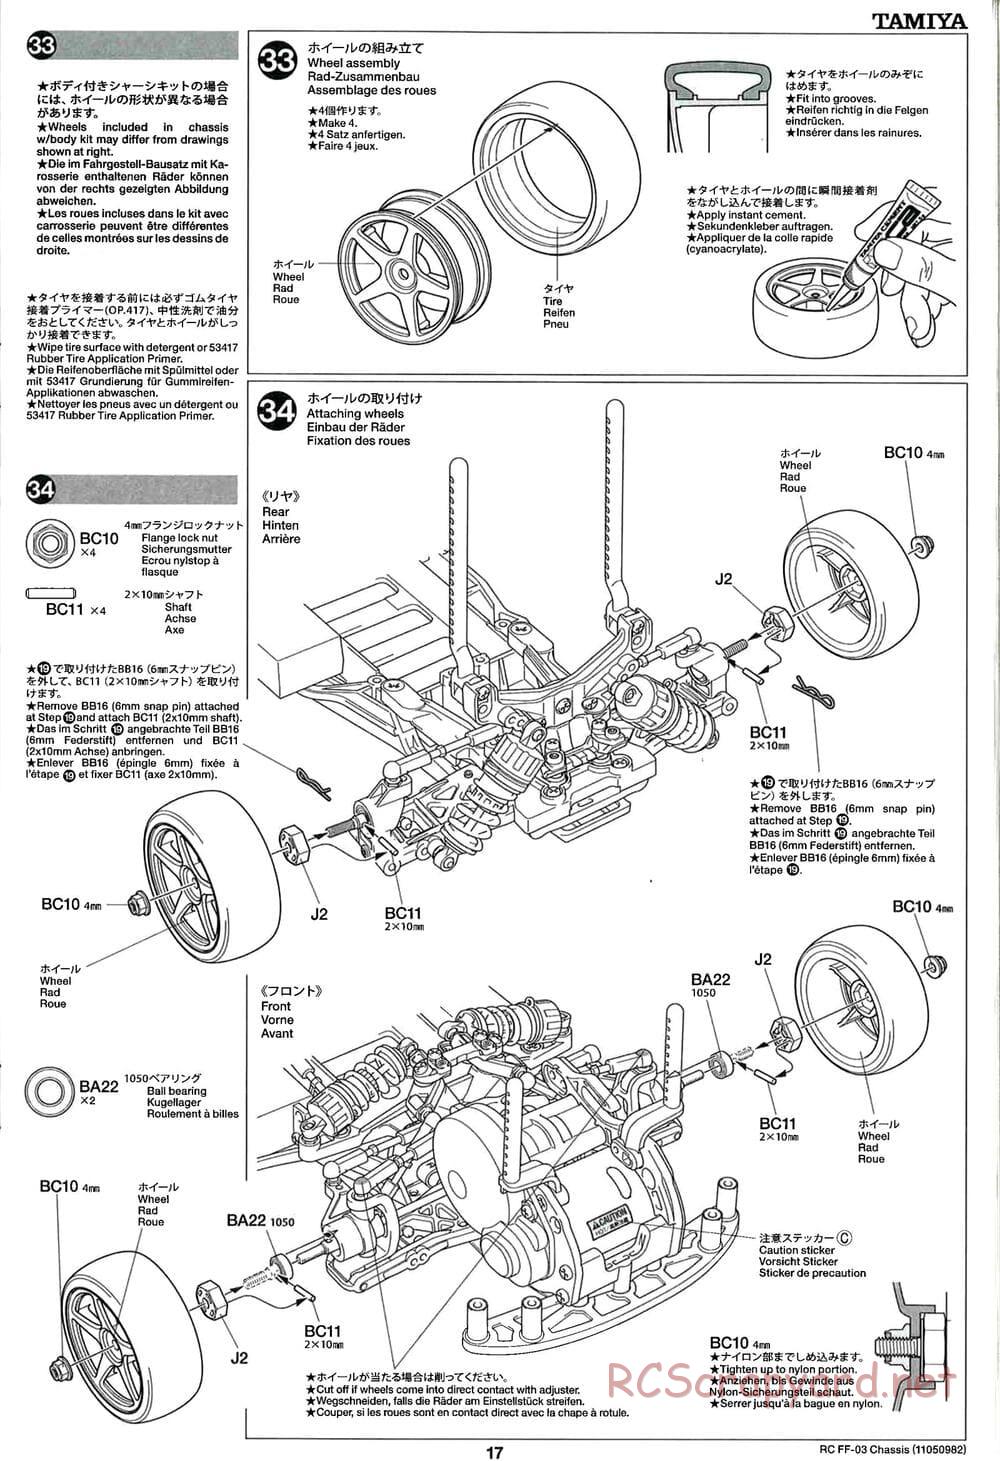 Tamiya - Honda CR-Z - FF-03 Chassis - Manual - Page 17